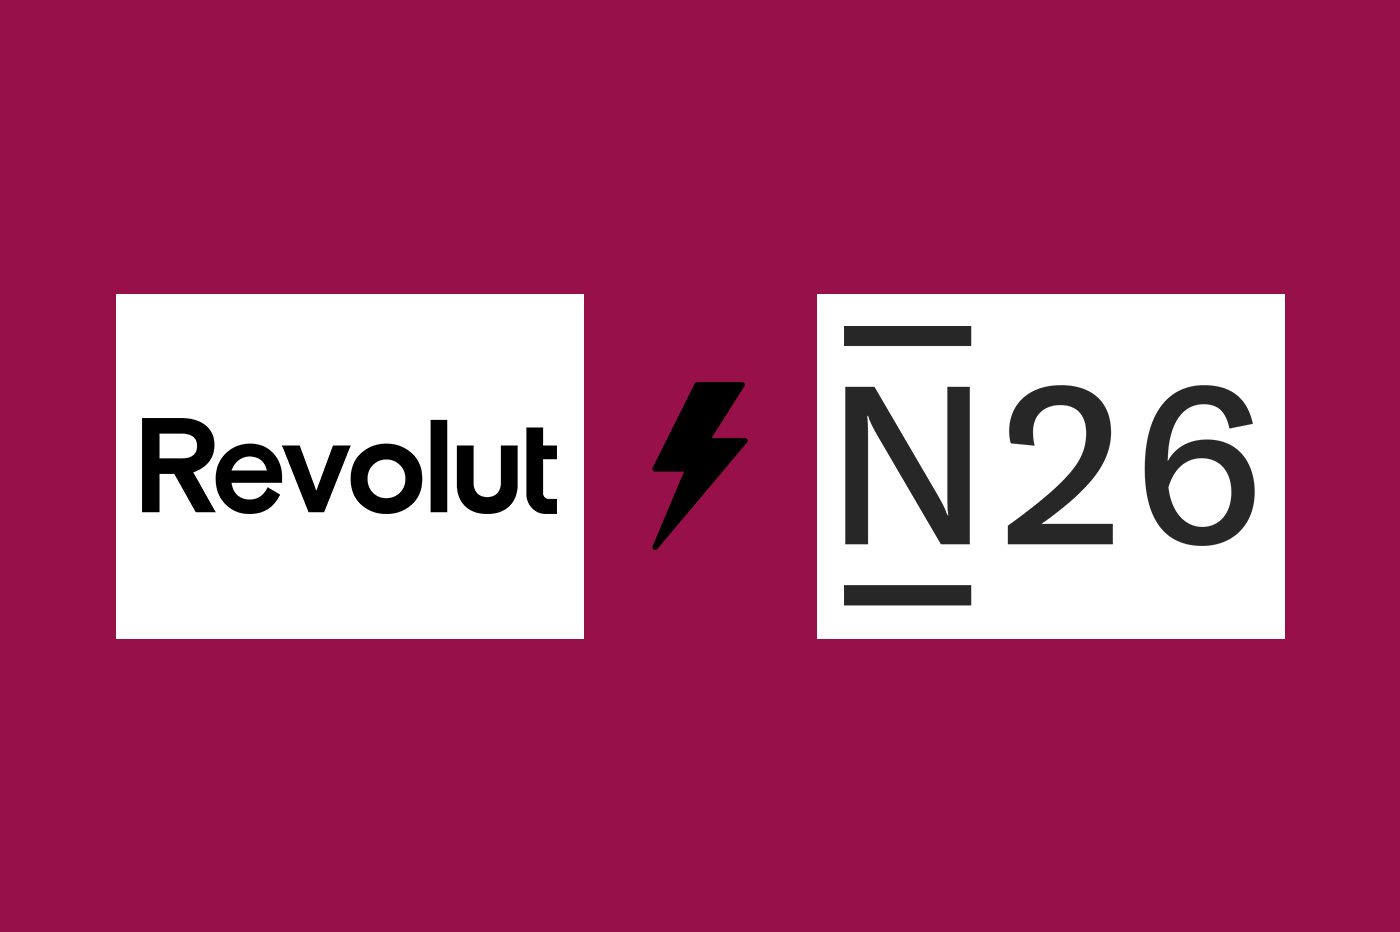 Revolut vs N26